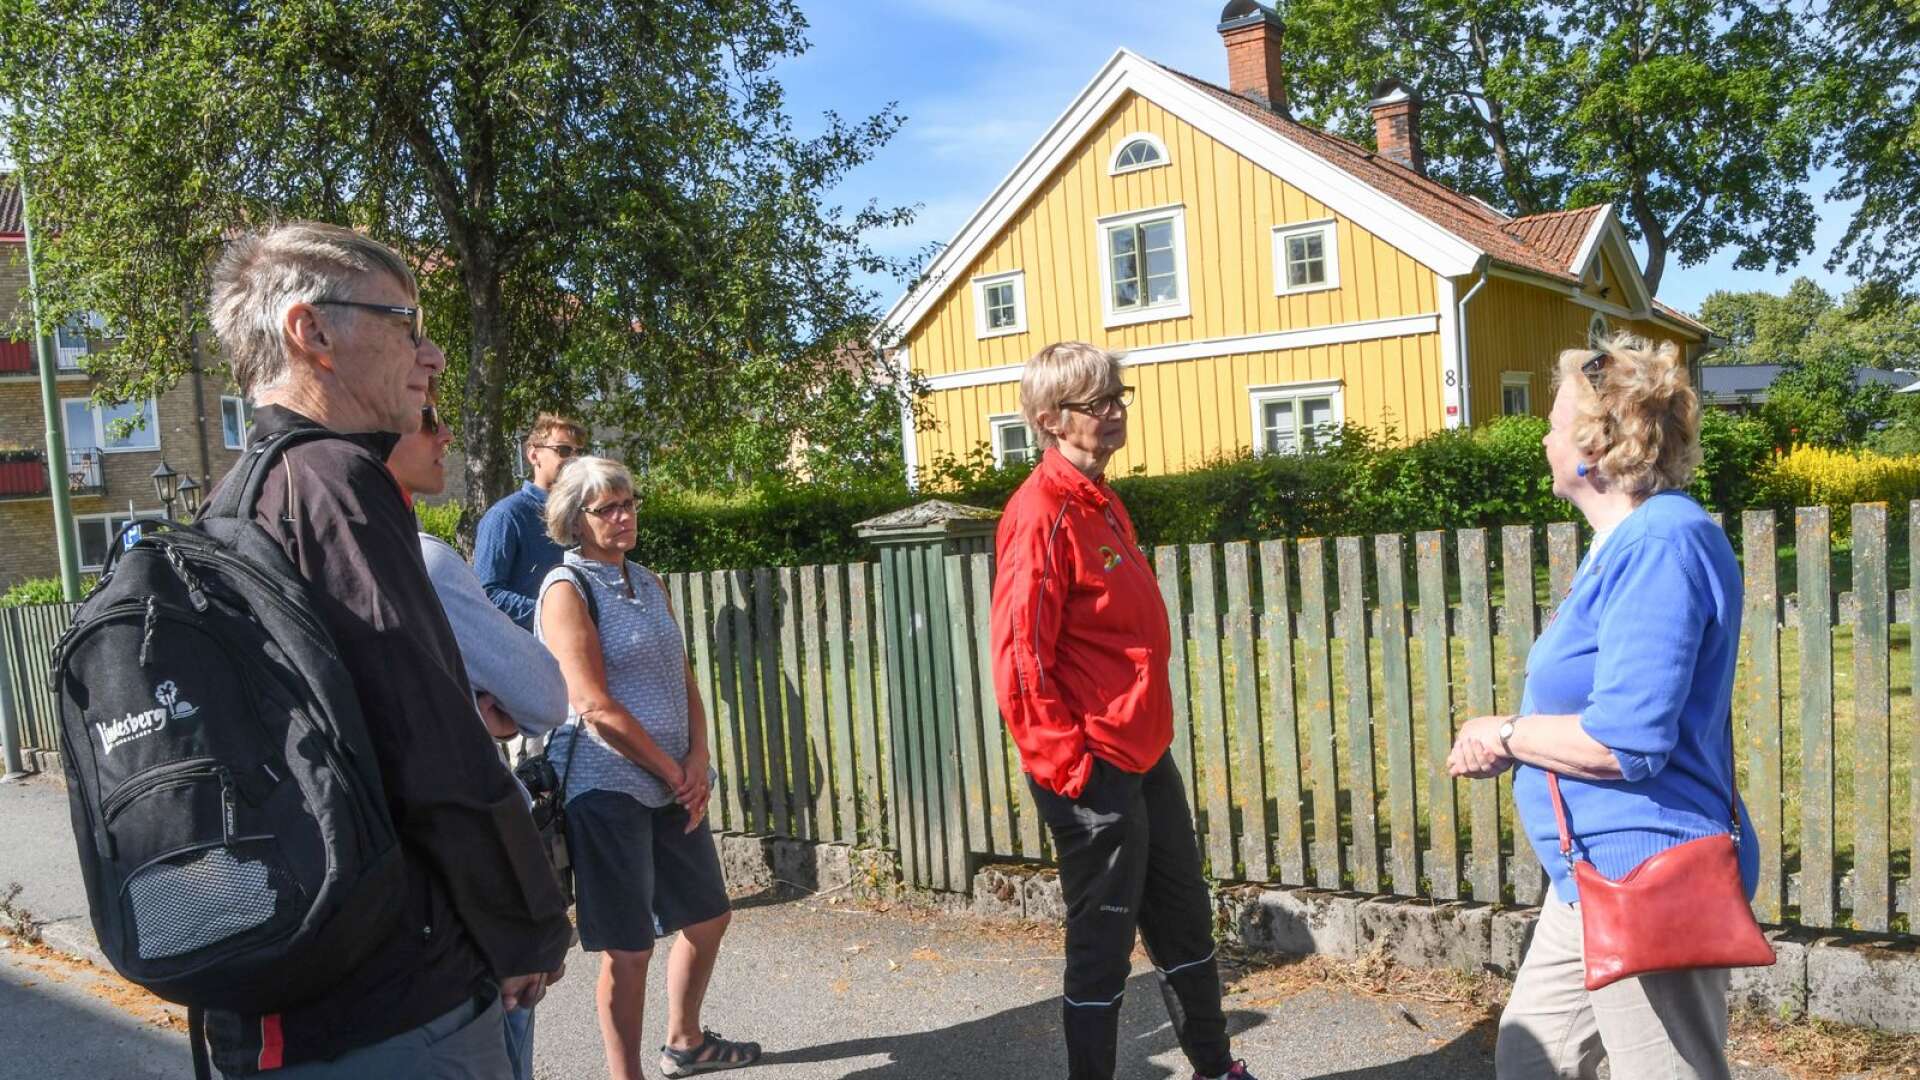 Från början var Töreboda en liten by med sju bondgårdar. Det gula huset är det enda som finns kvar från den tiden, berättar Elisabeth Göthberg. 